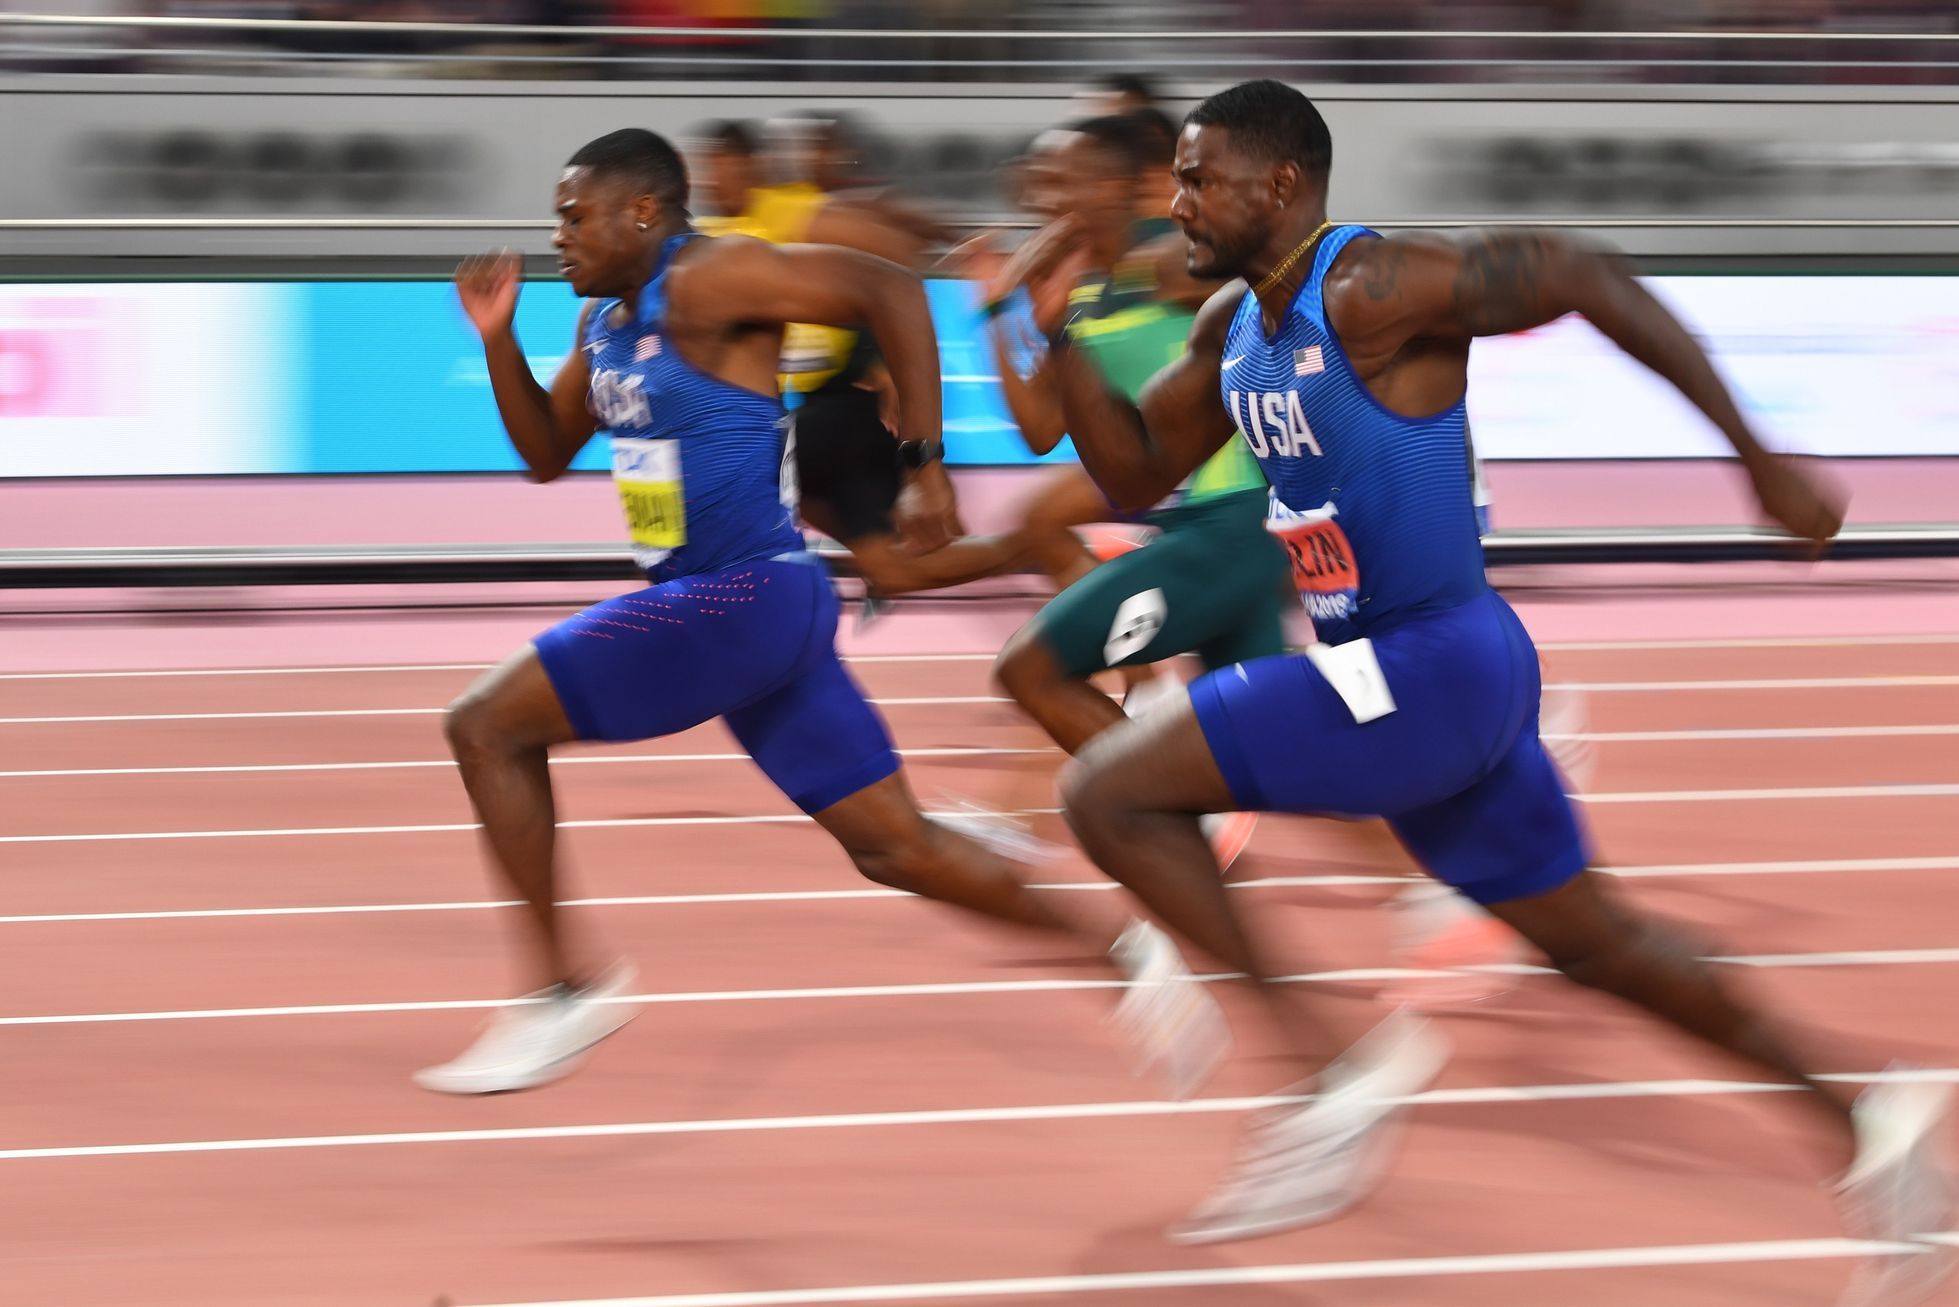 Christian Coleman, sprint na 100 metrů, MS v atletice 2019